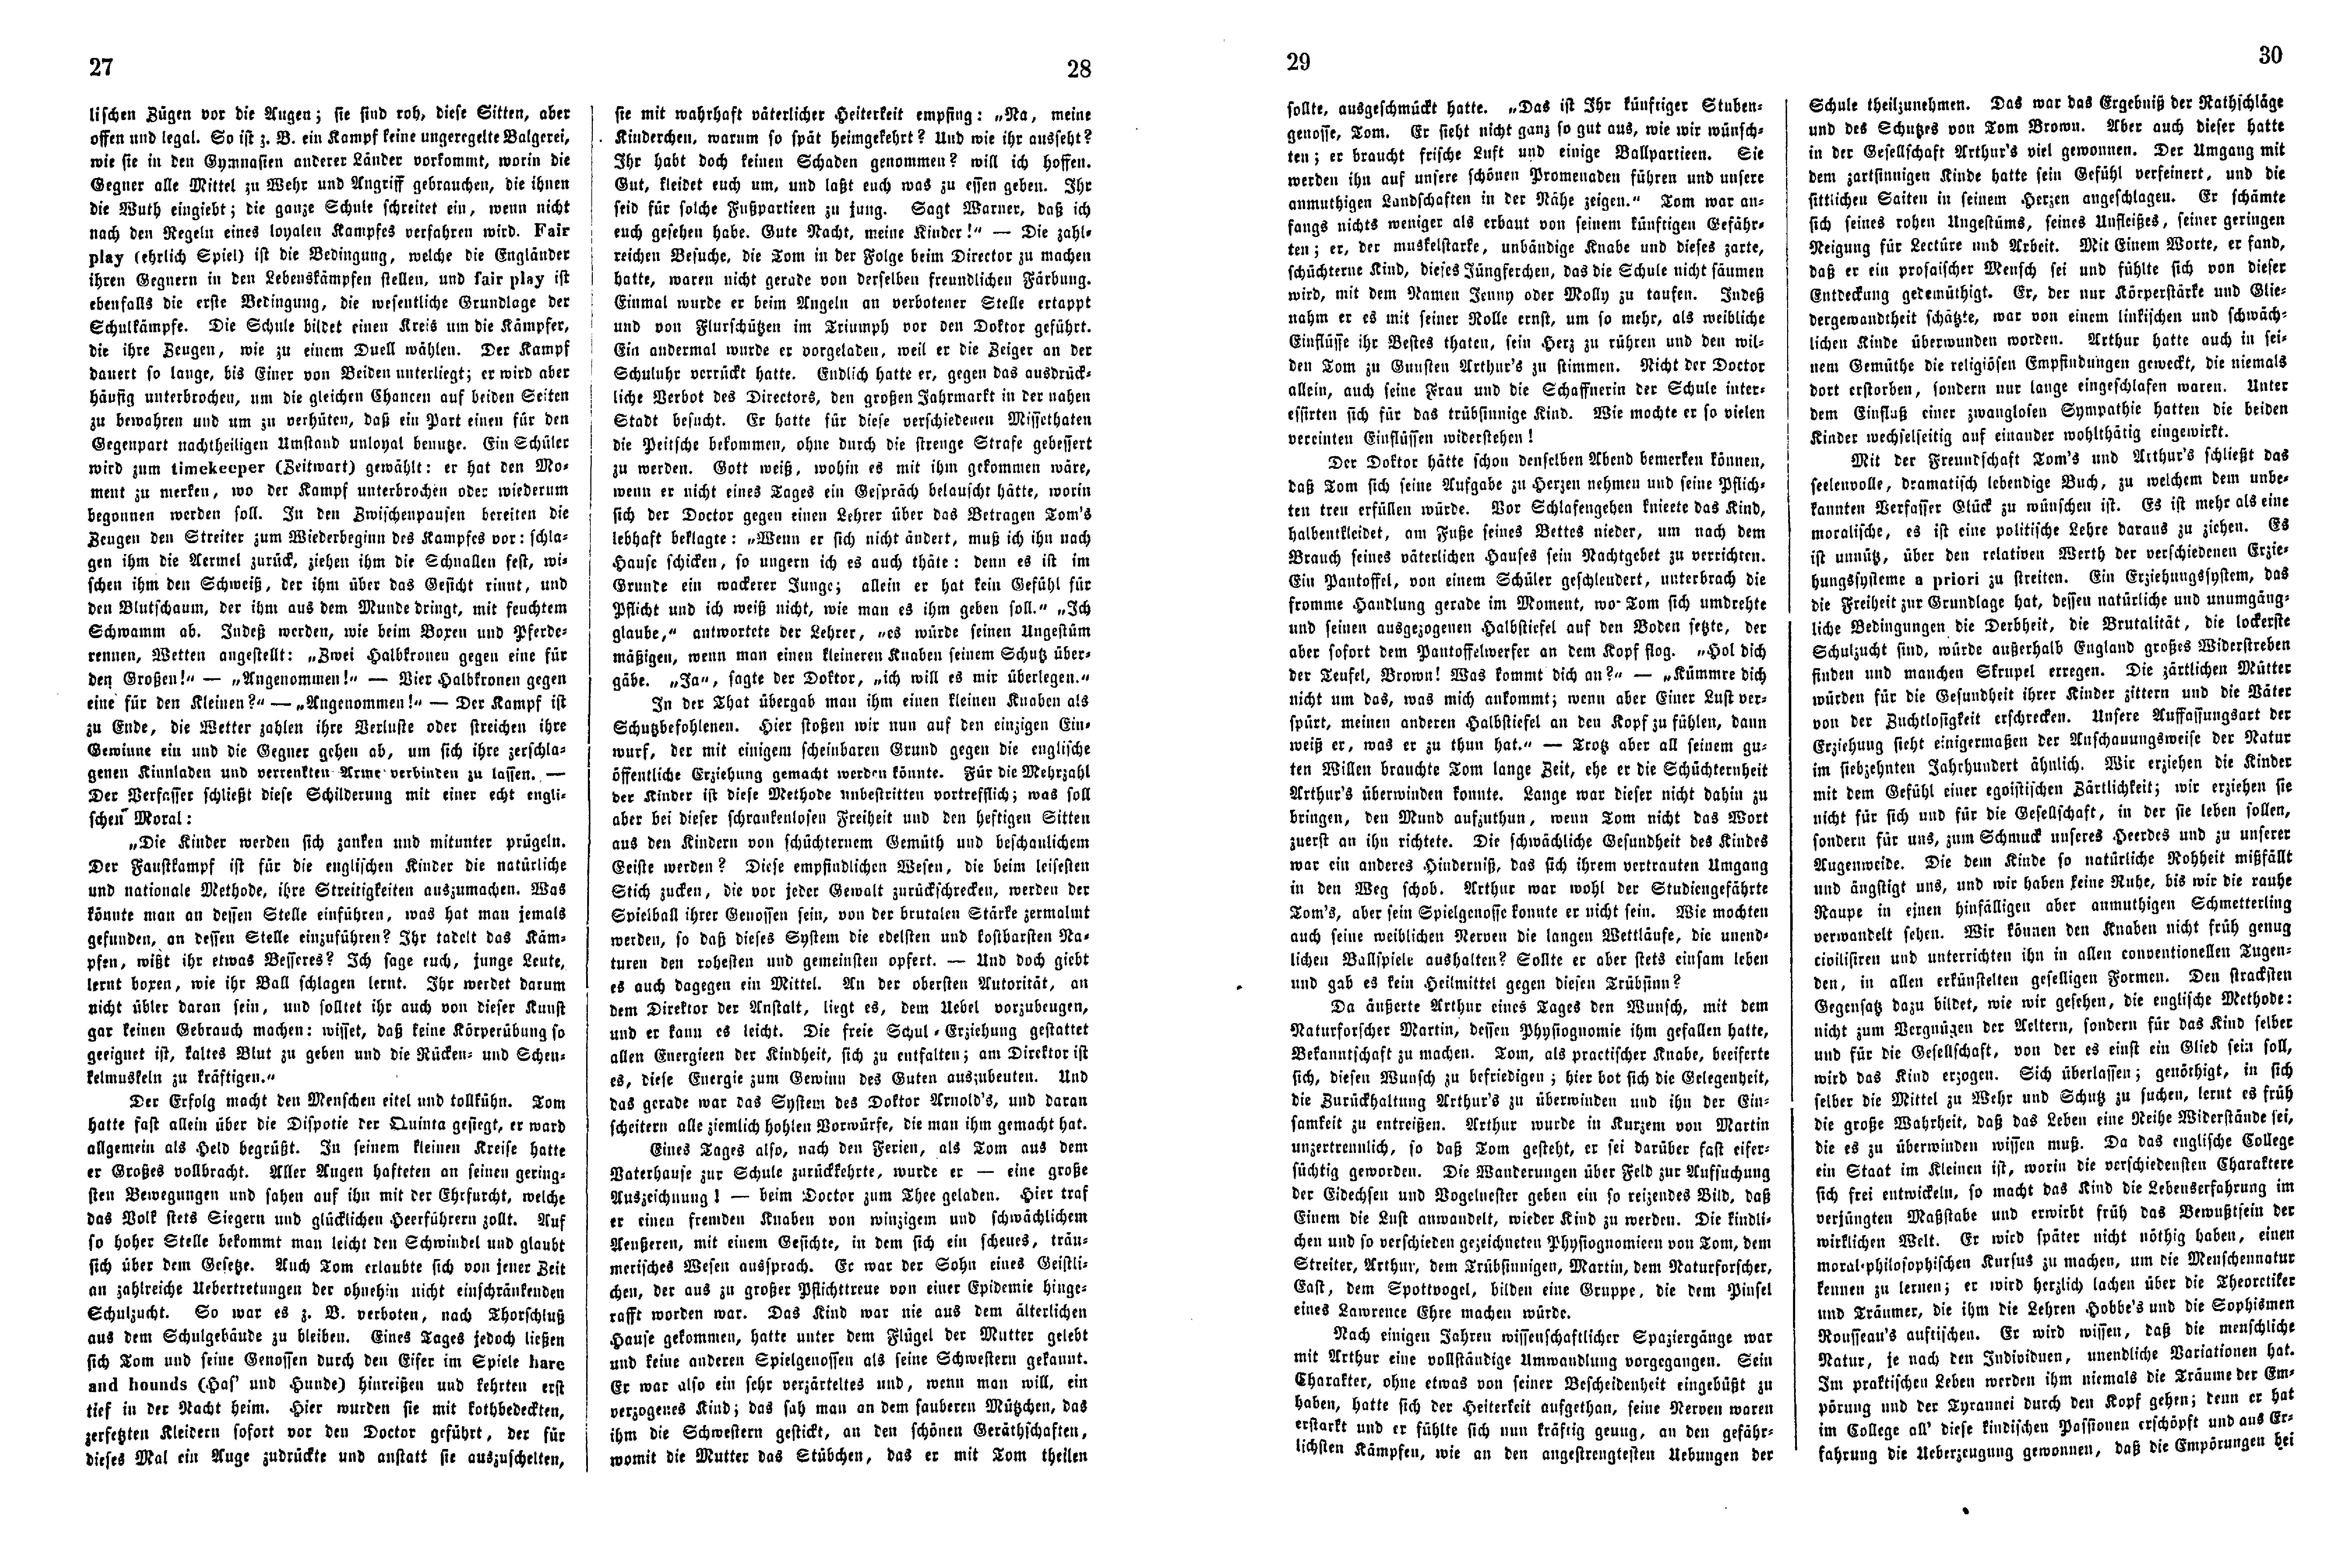 Das Inland [26] (1861) | 11. (27-30) Haupttext